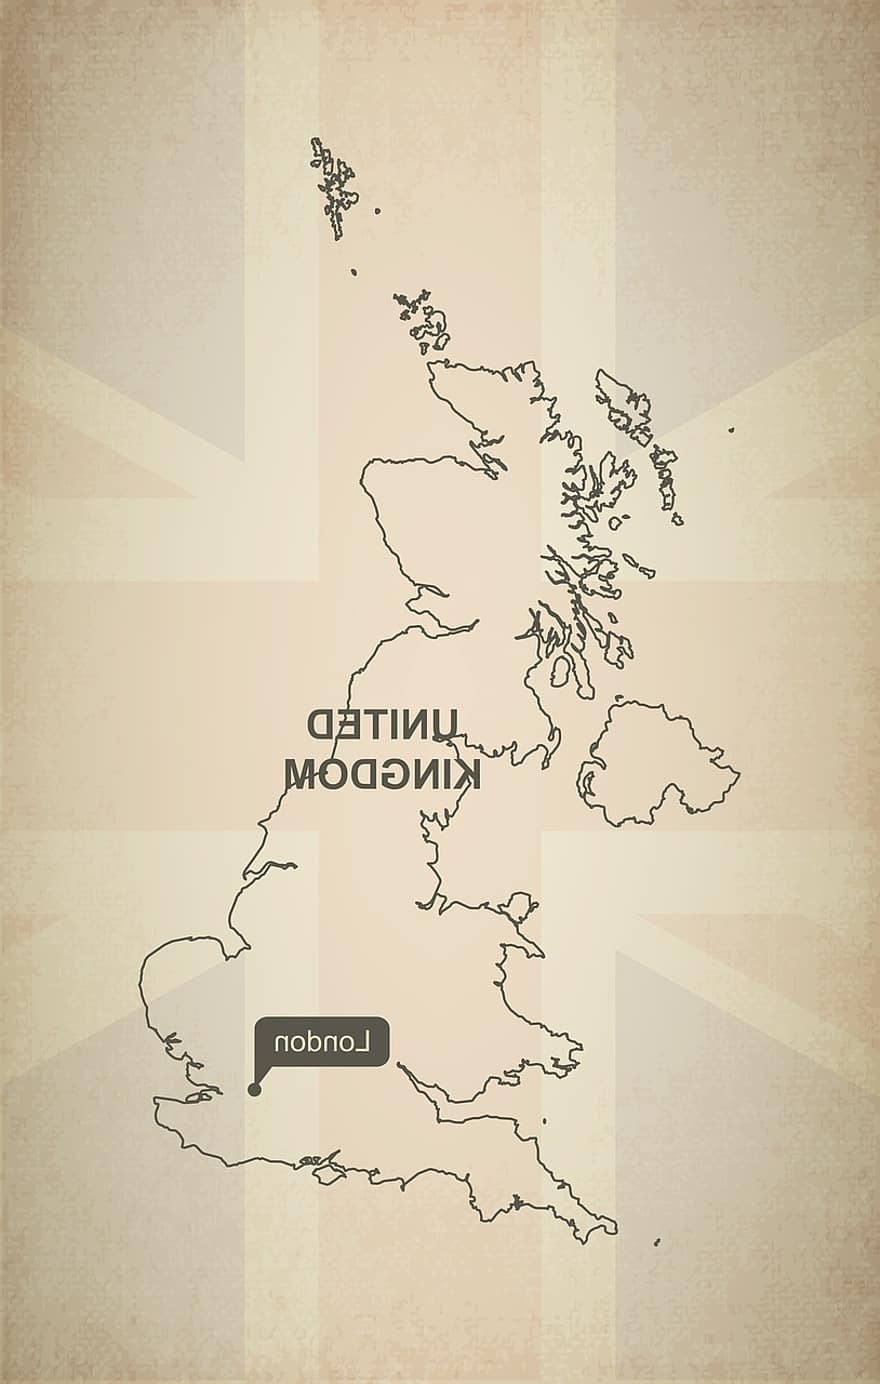 เค้าโครง, แผนที่, ประเทศอังกฤษ, ภูมิศาสตร์, ประเทศ, ยุโรป, ถูกต้อง, ธง